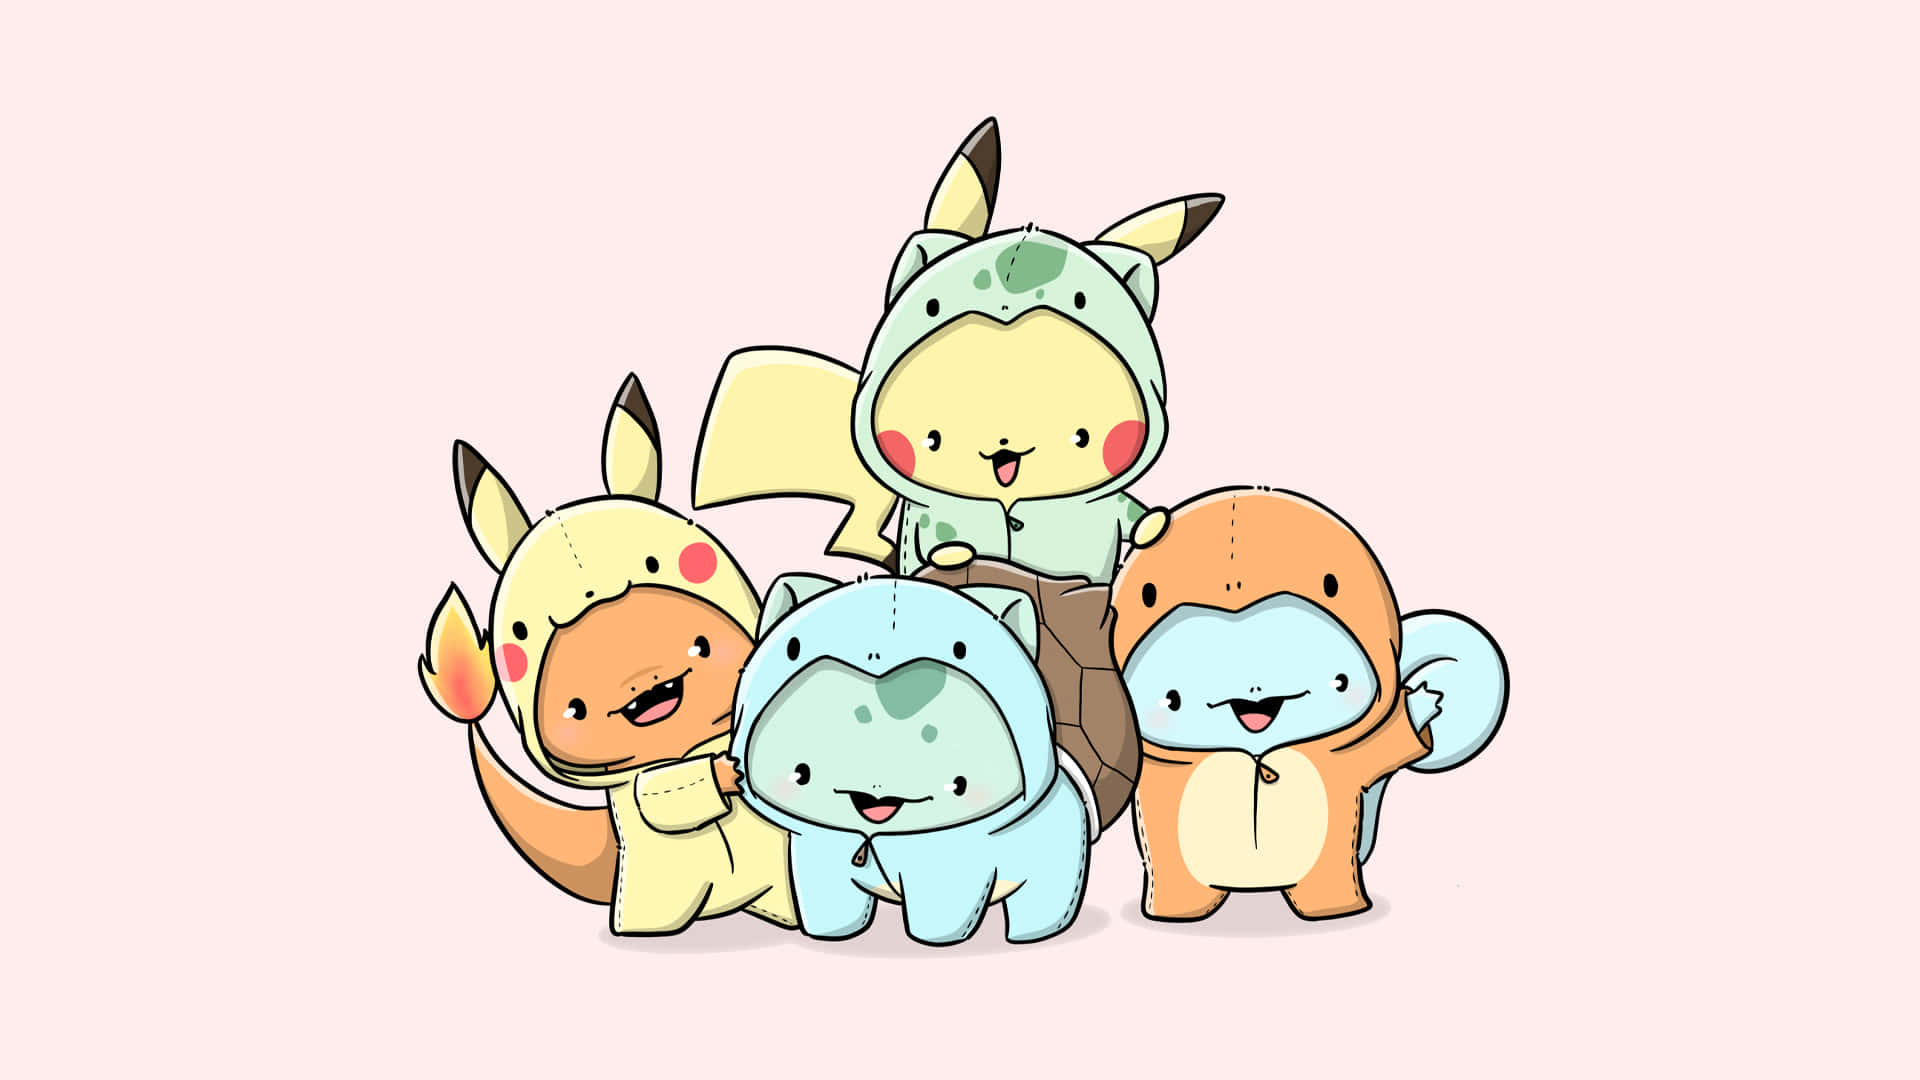 Fondode Pantalla De Pikachu, Charmander, Squirtle Y Bulbasaur En Estilo Chibi De Arte De Pokémon.